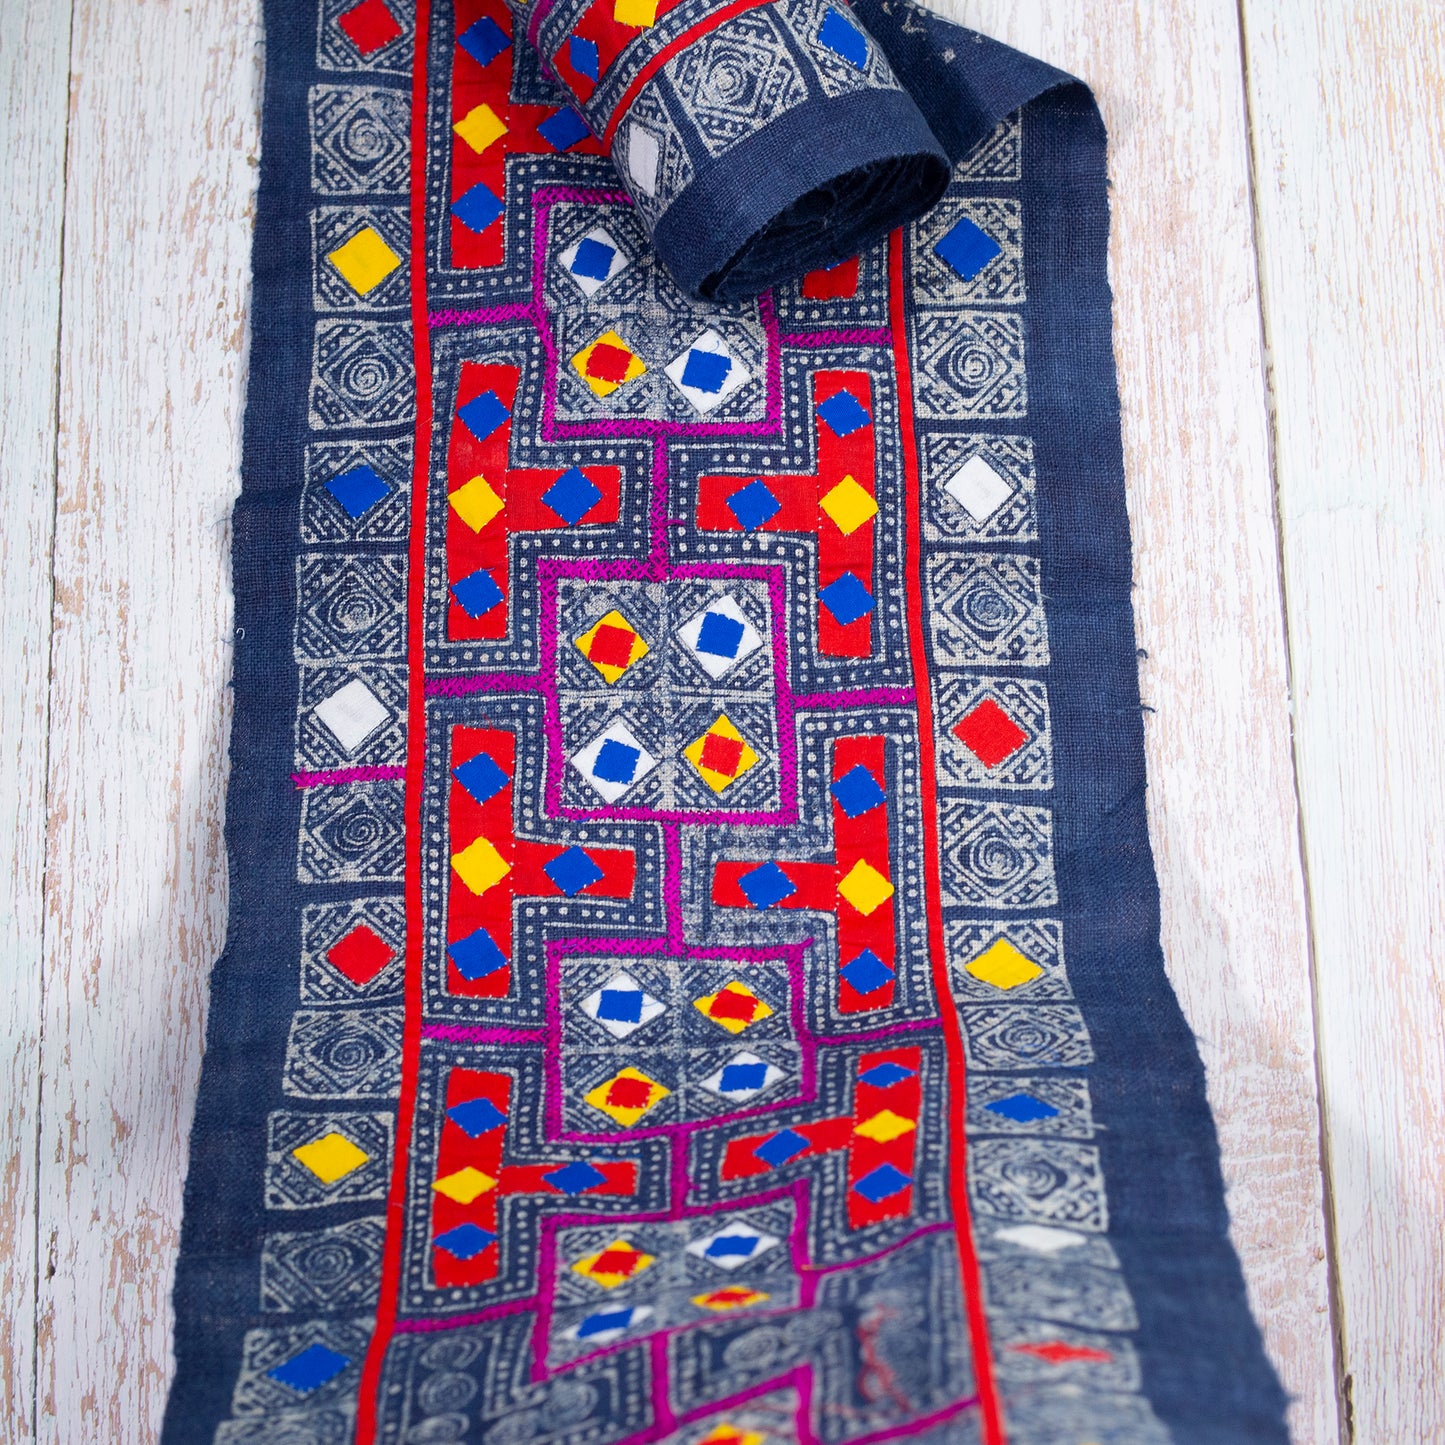 Autentisk Vintage H'mong Hamp Textil - Indigo Batik med handdrakade och broderade detaljer